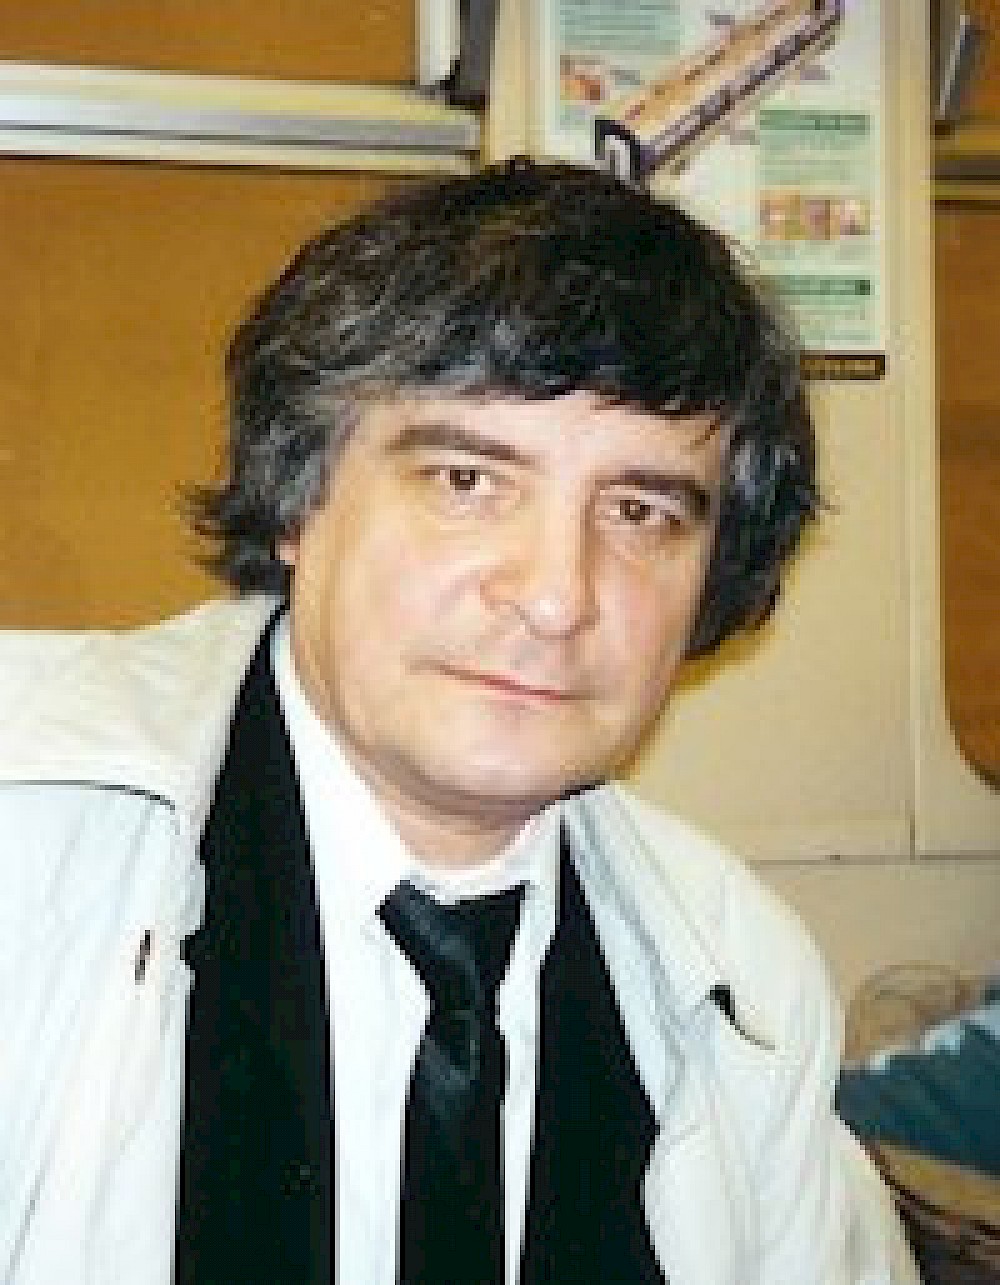 Dimitri Smirnov